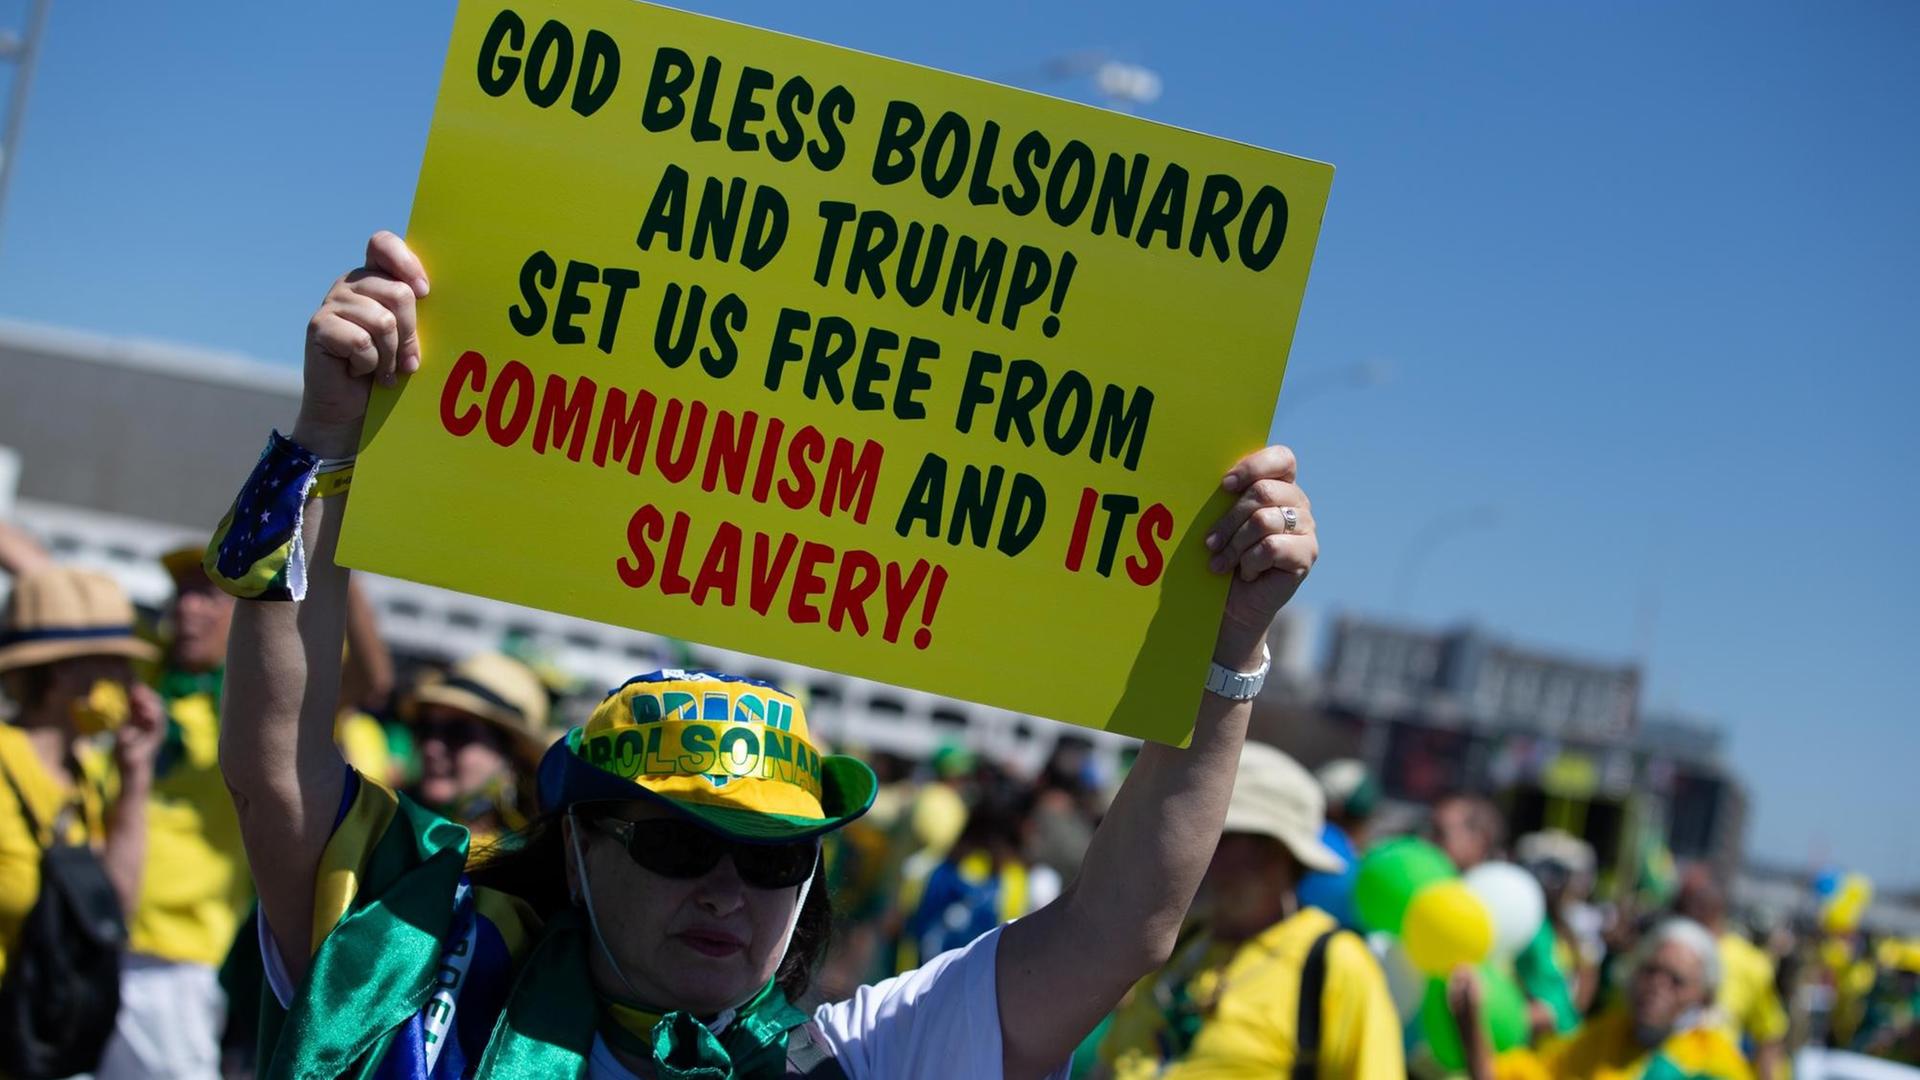 "Gott segne Bolsonaro und Trump! Befreit uns vom Kommunismus uns deren Sklaverei", steht auf dem Plakat einer Anhängerin des rechten brasilianischen Präsidenten am brasilianischen Unabhängigkeitstag.